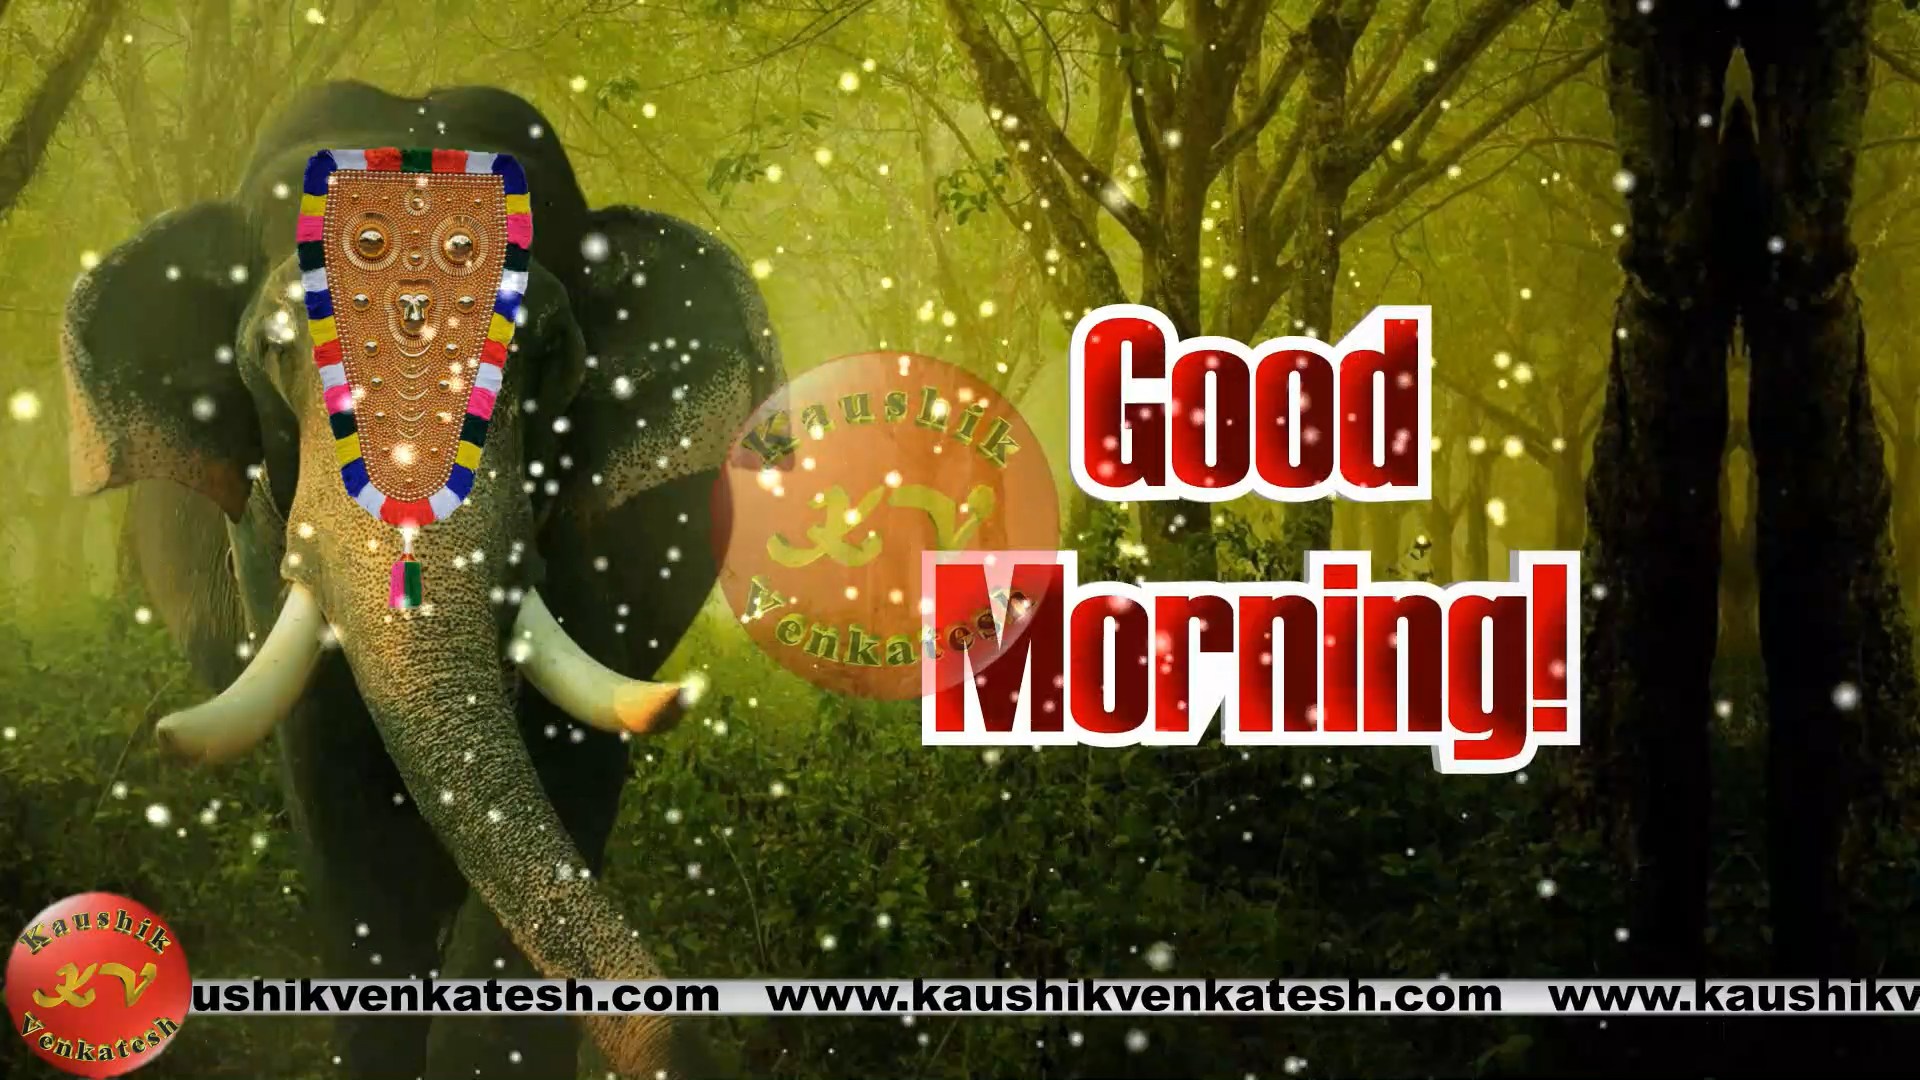 Good Morning Greeting Messages - Kaushik Venkatesh